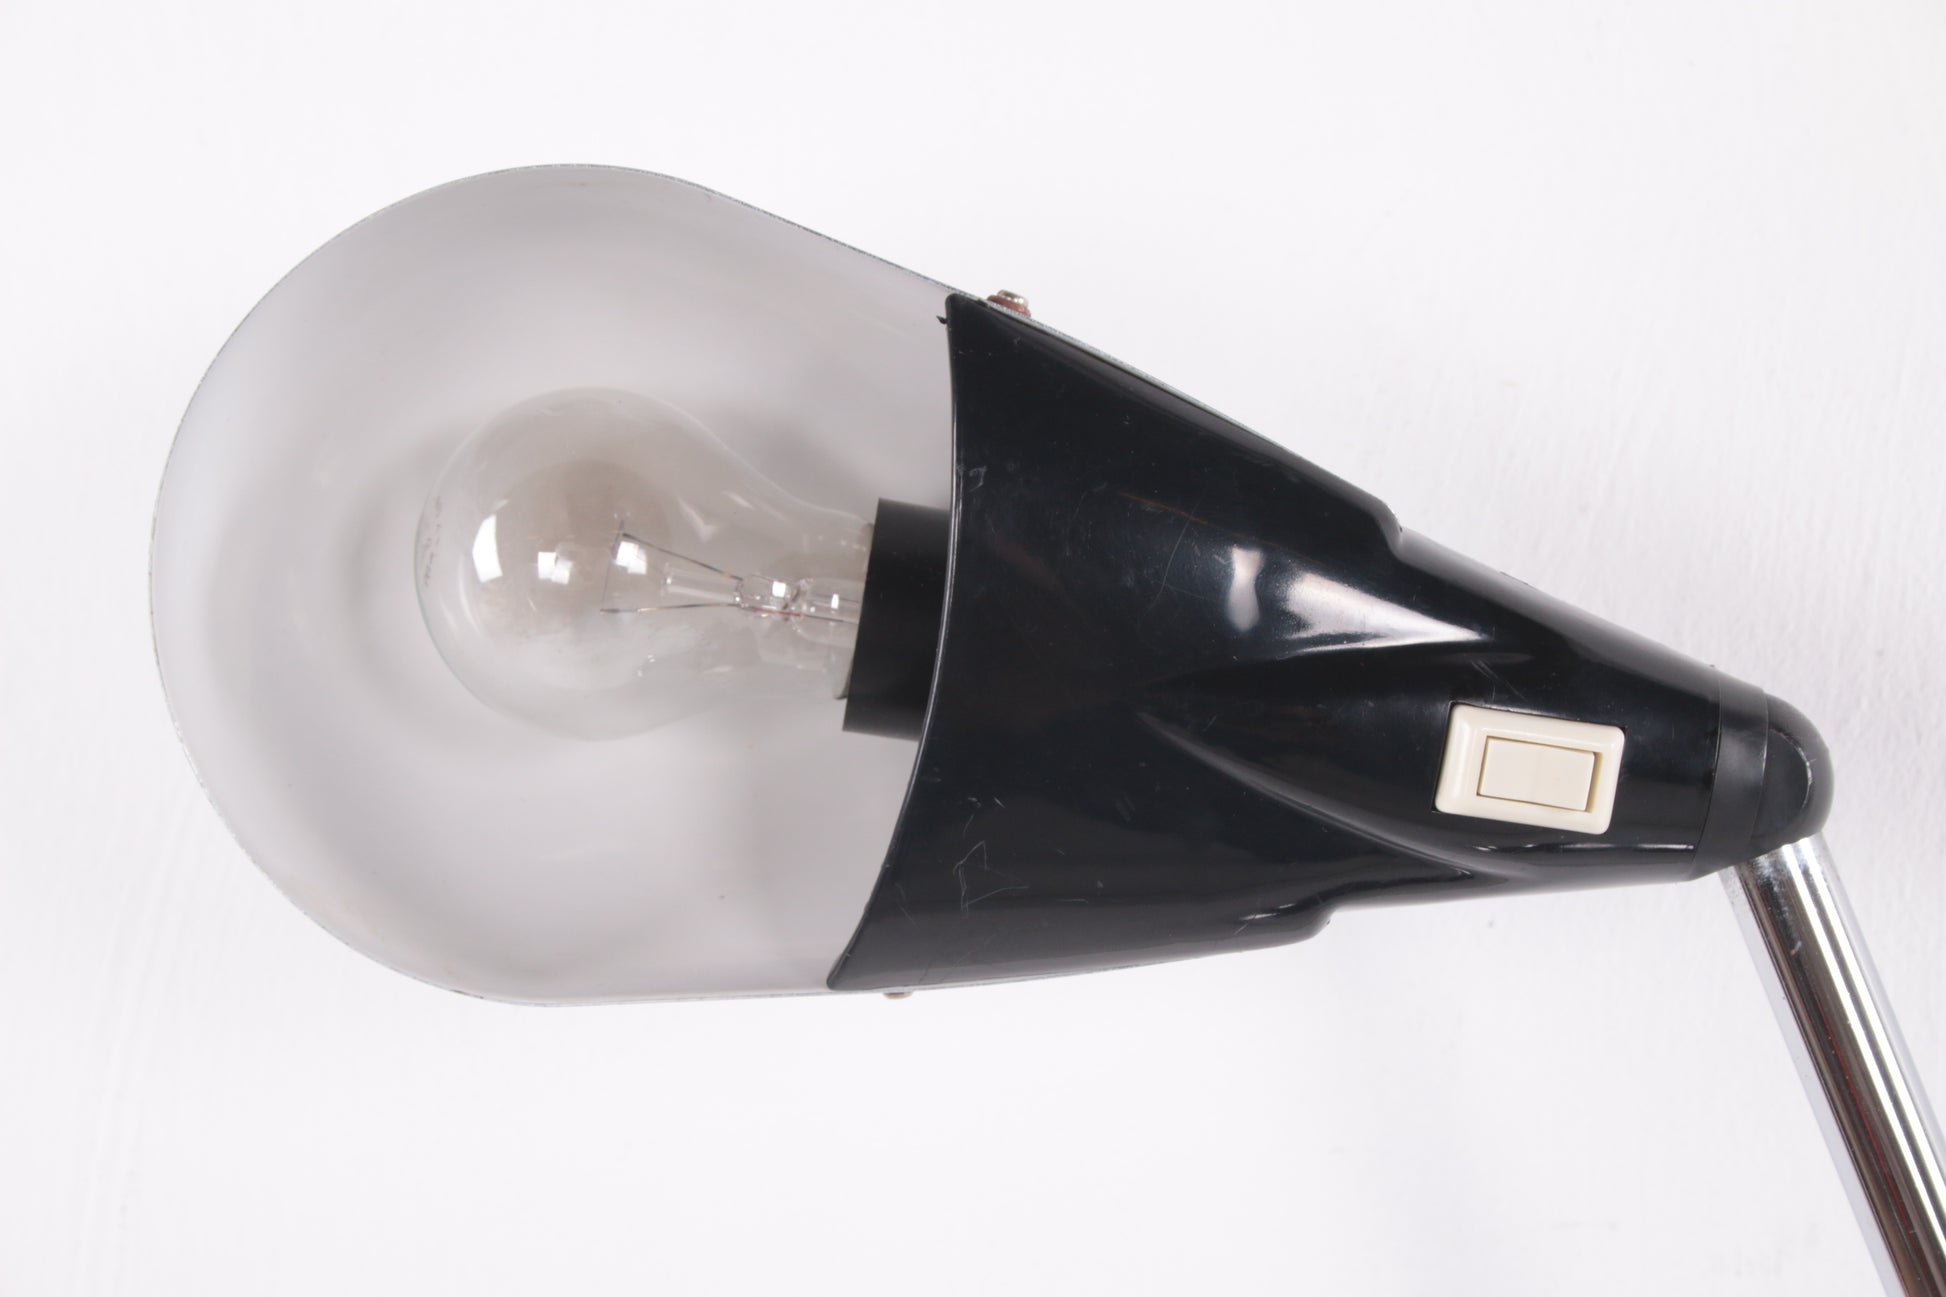 Italiaanse bureaulamp Van Marina Malabotti 70s detail lamp